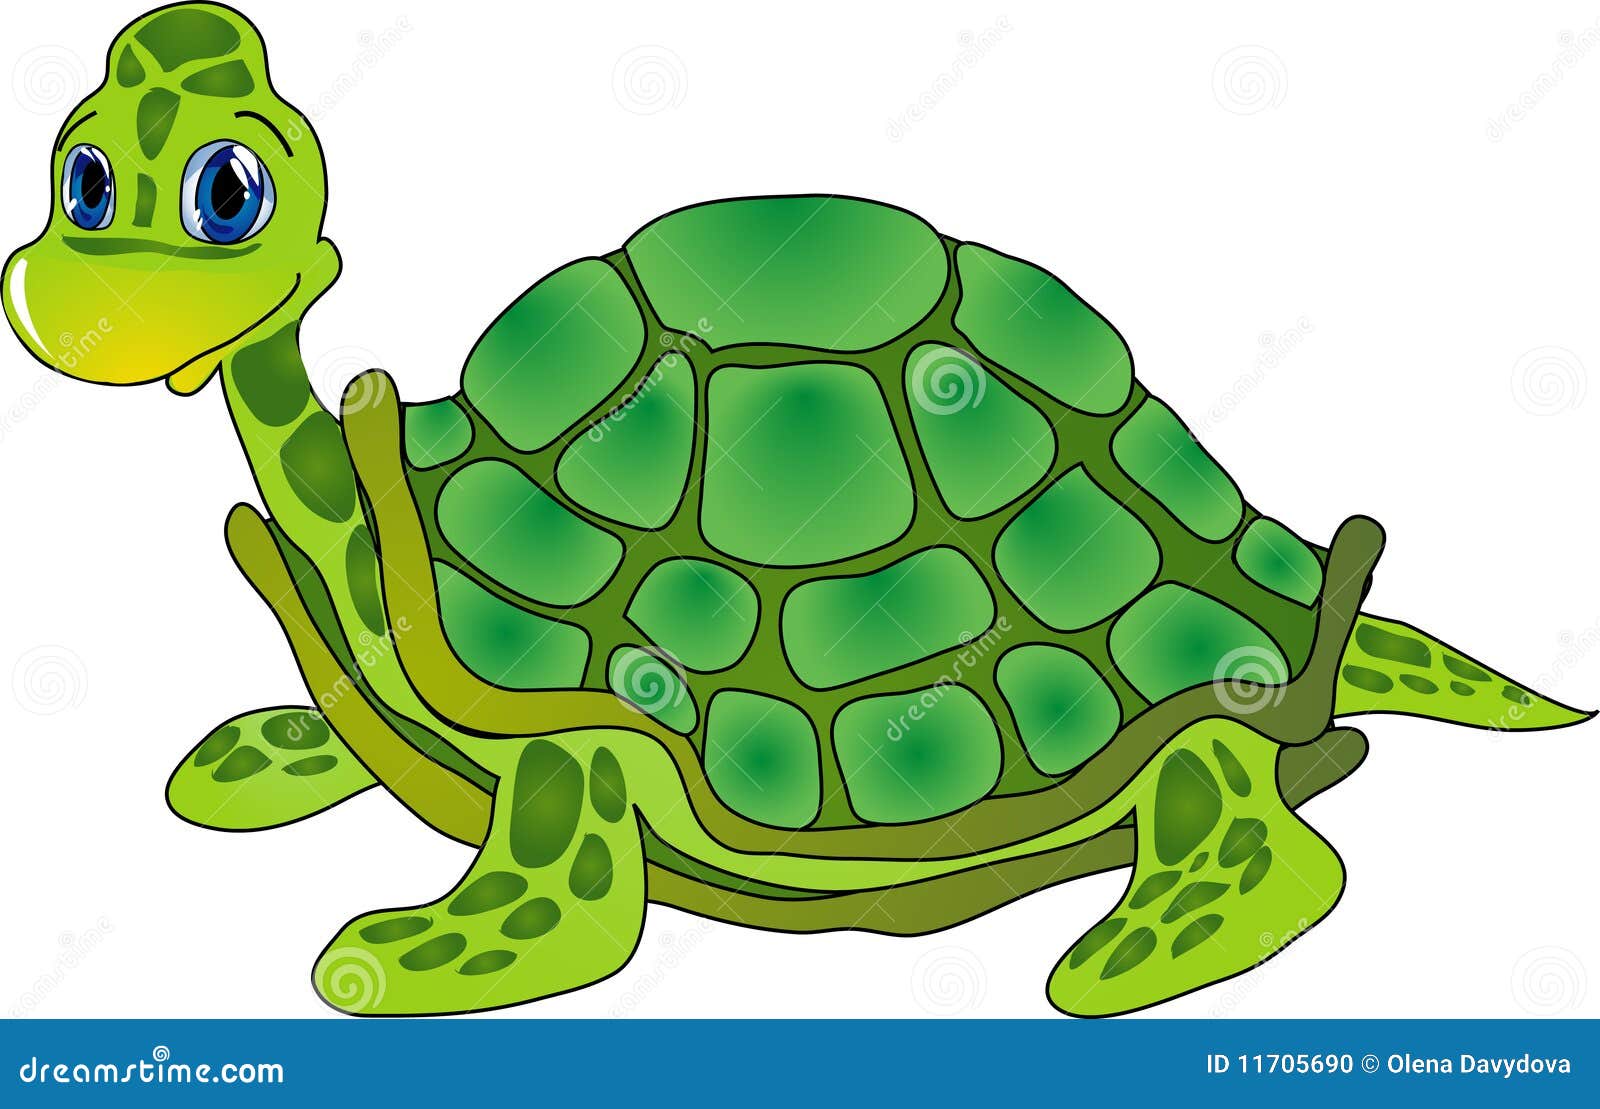 Green Tortoise Stock Illustrations – 5,774 Green Tortoise Stock  Illustrations, Vectors & Clipart - Dreamstime